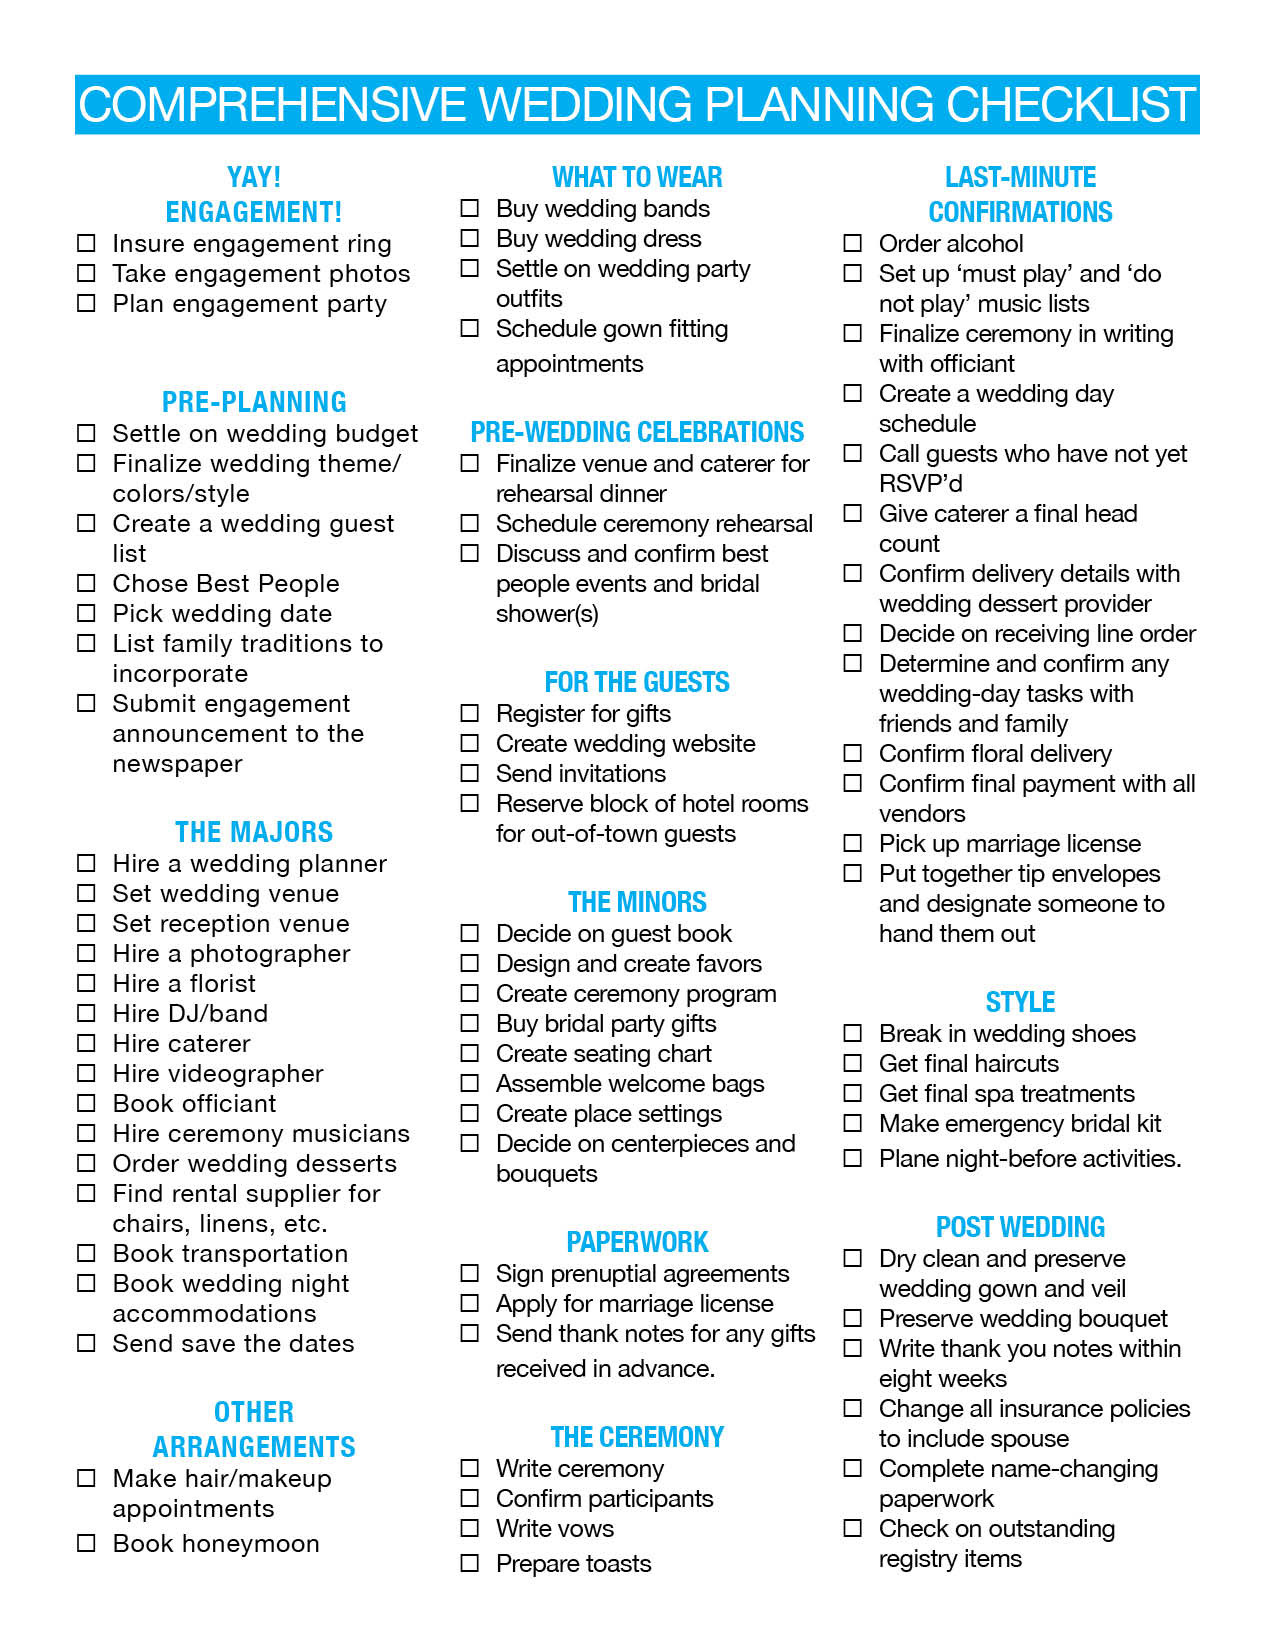 DIY Backyard Wedding Checklist
 Diy backyard wedding checklist